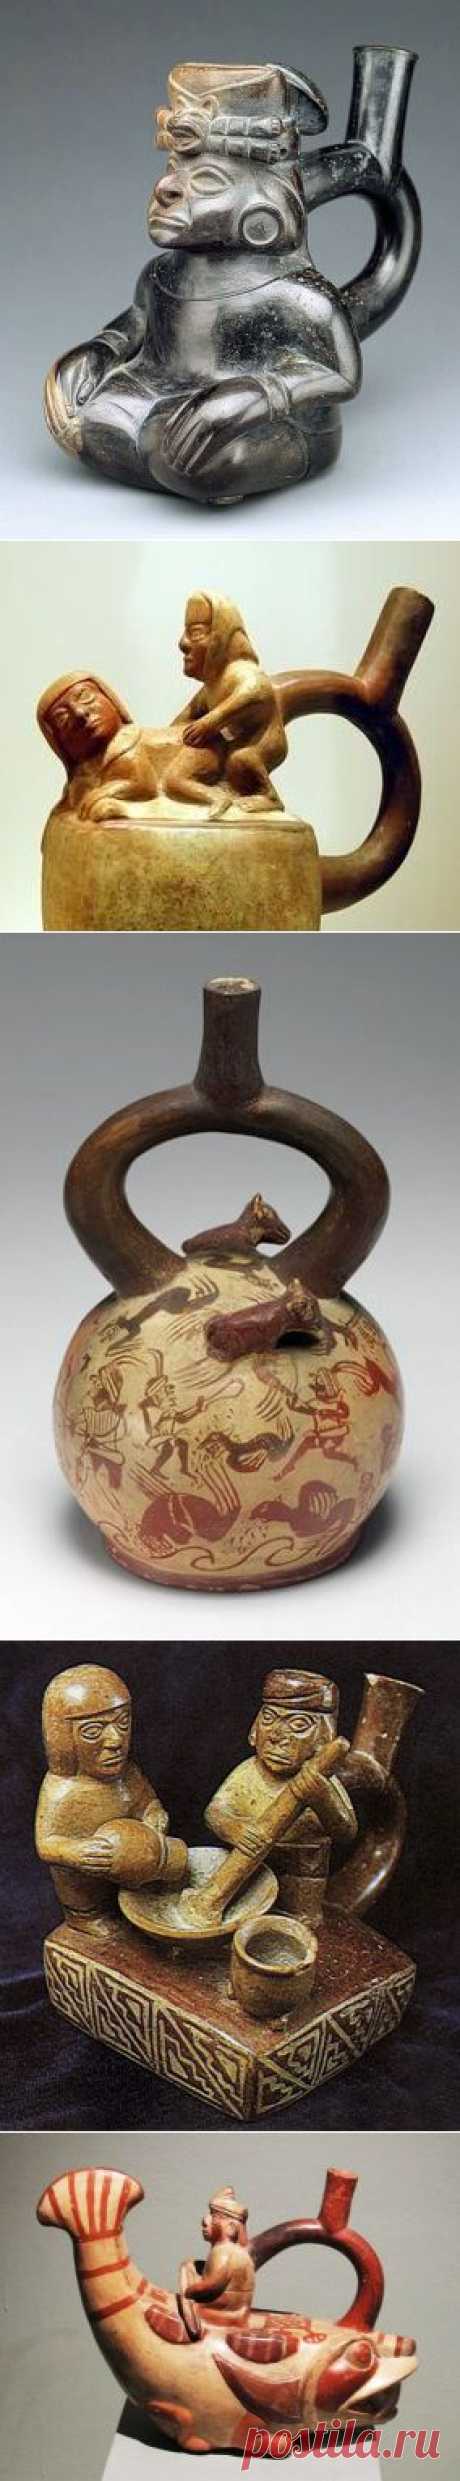 Древняя перуанская керамика - Моче, Наска, Инки